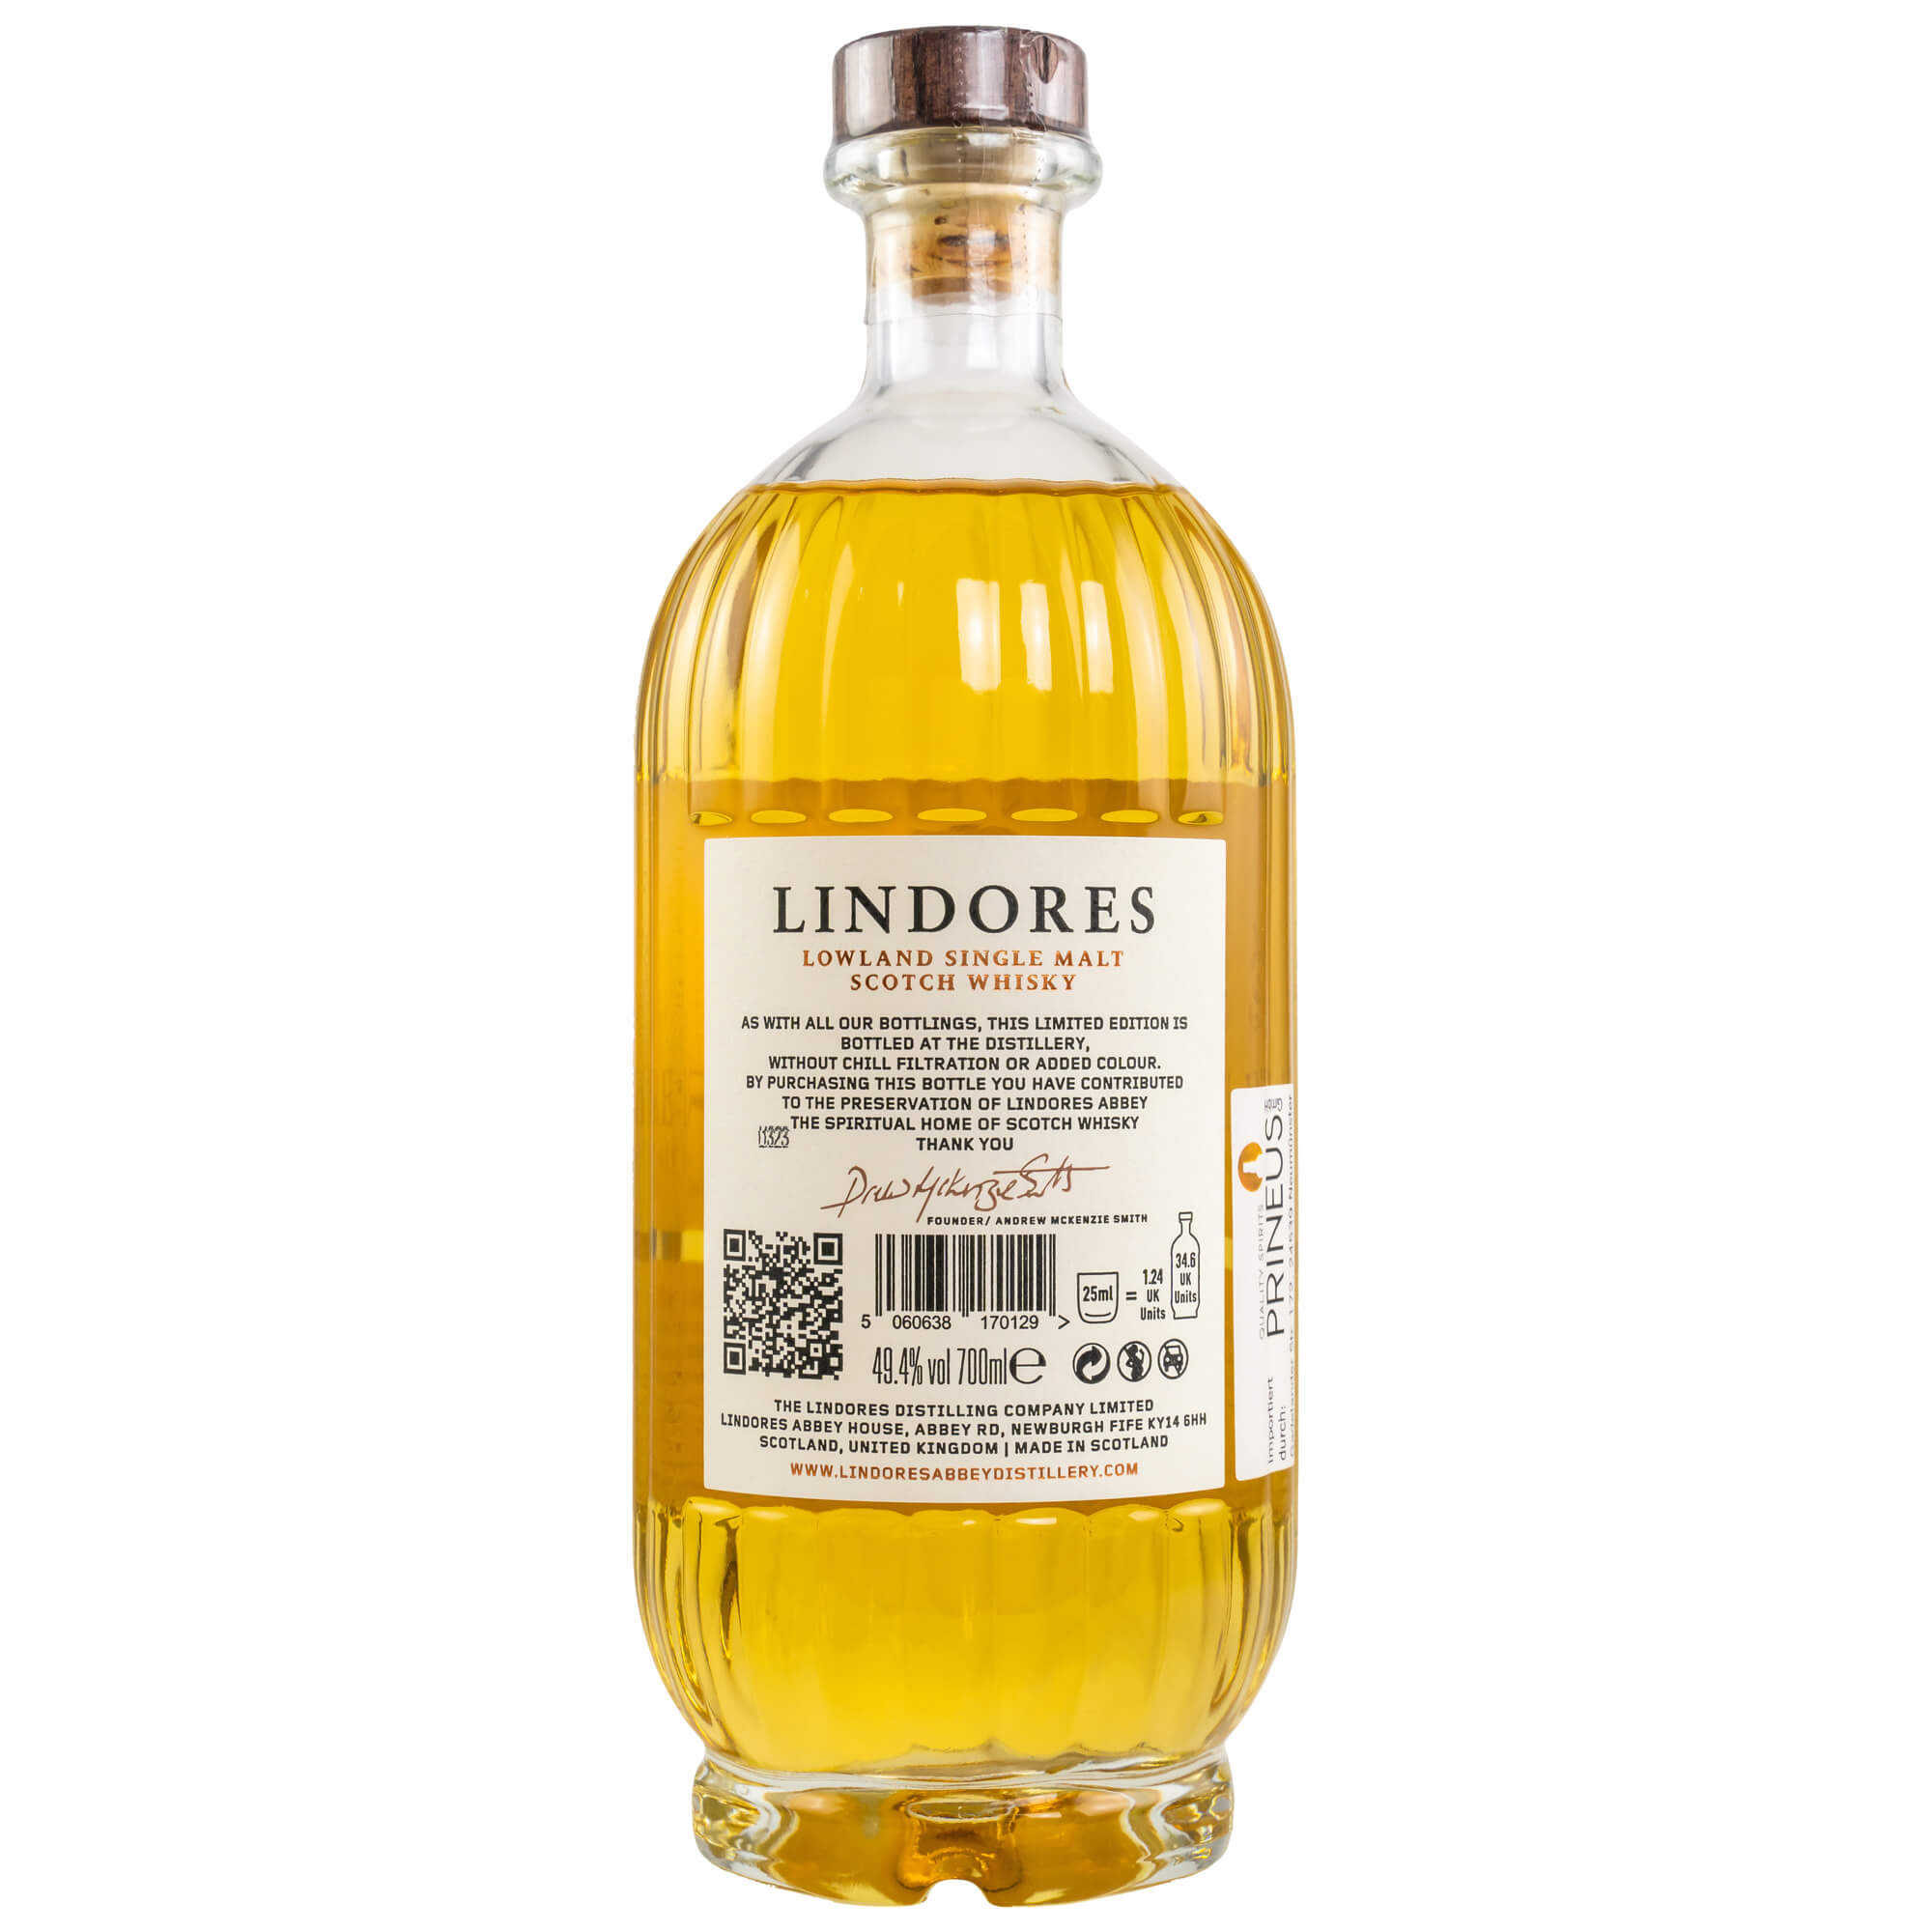 Lindores - The Casks of Lindores Bourbon